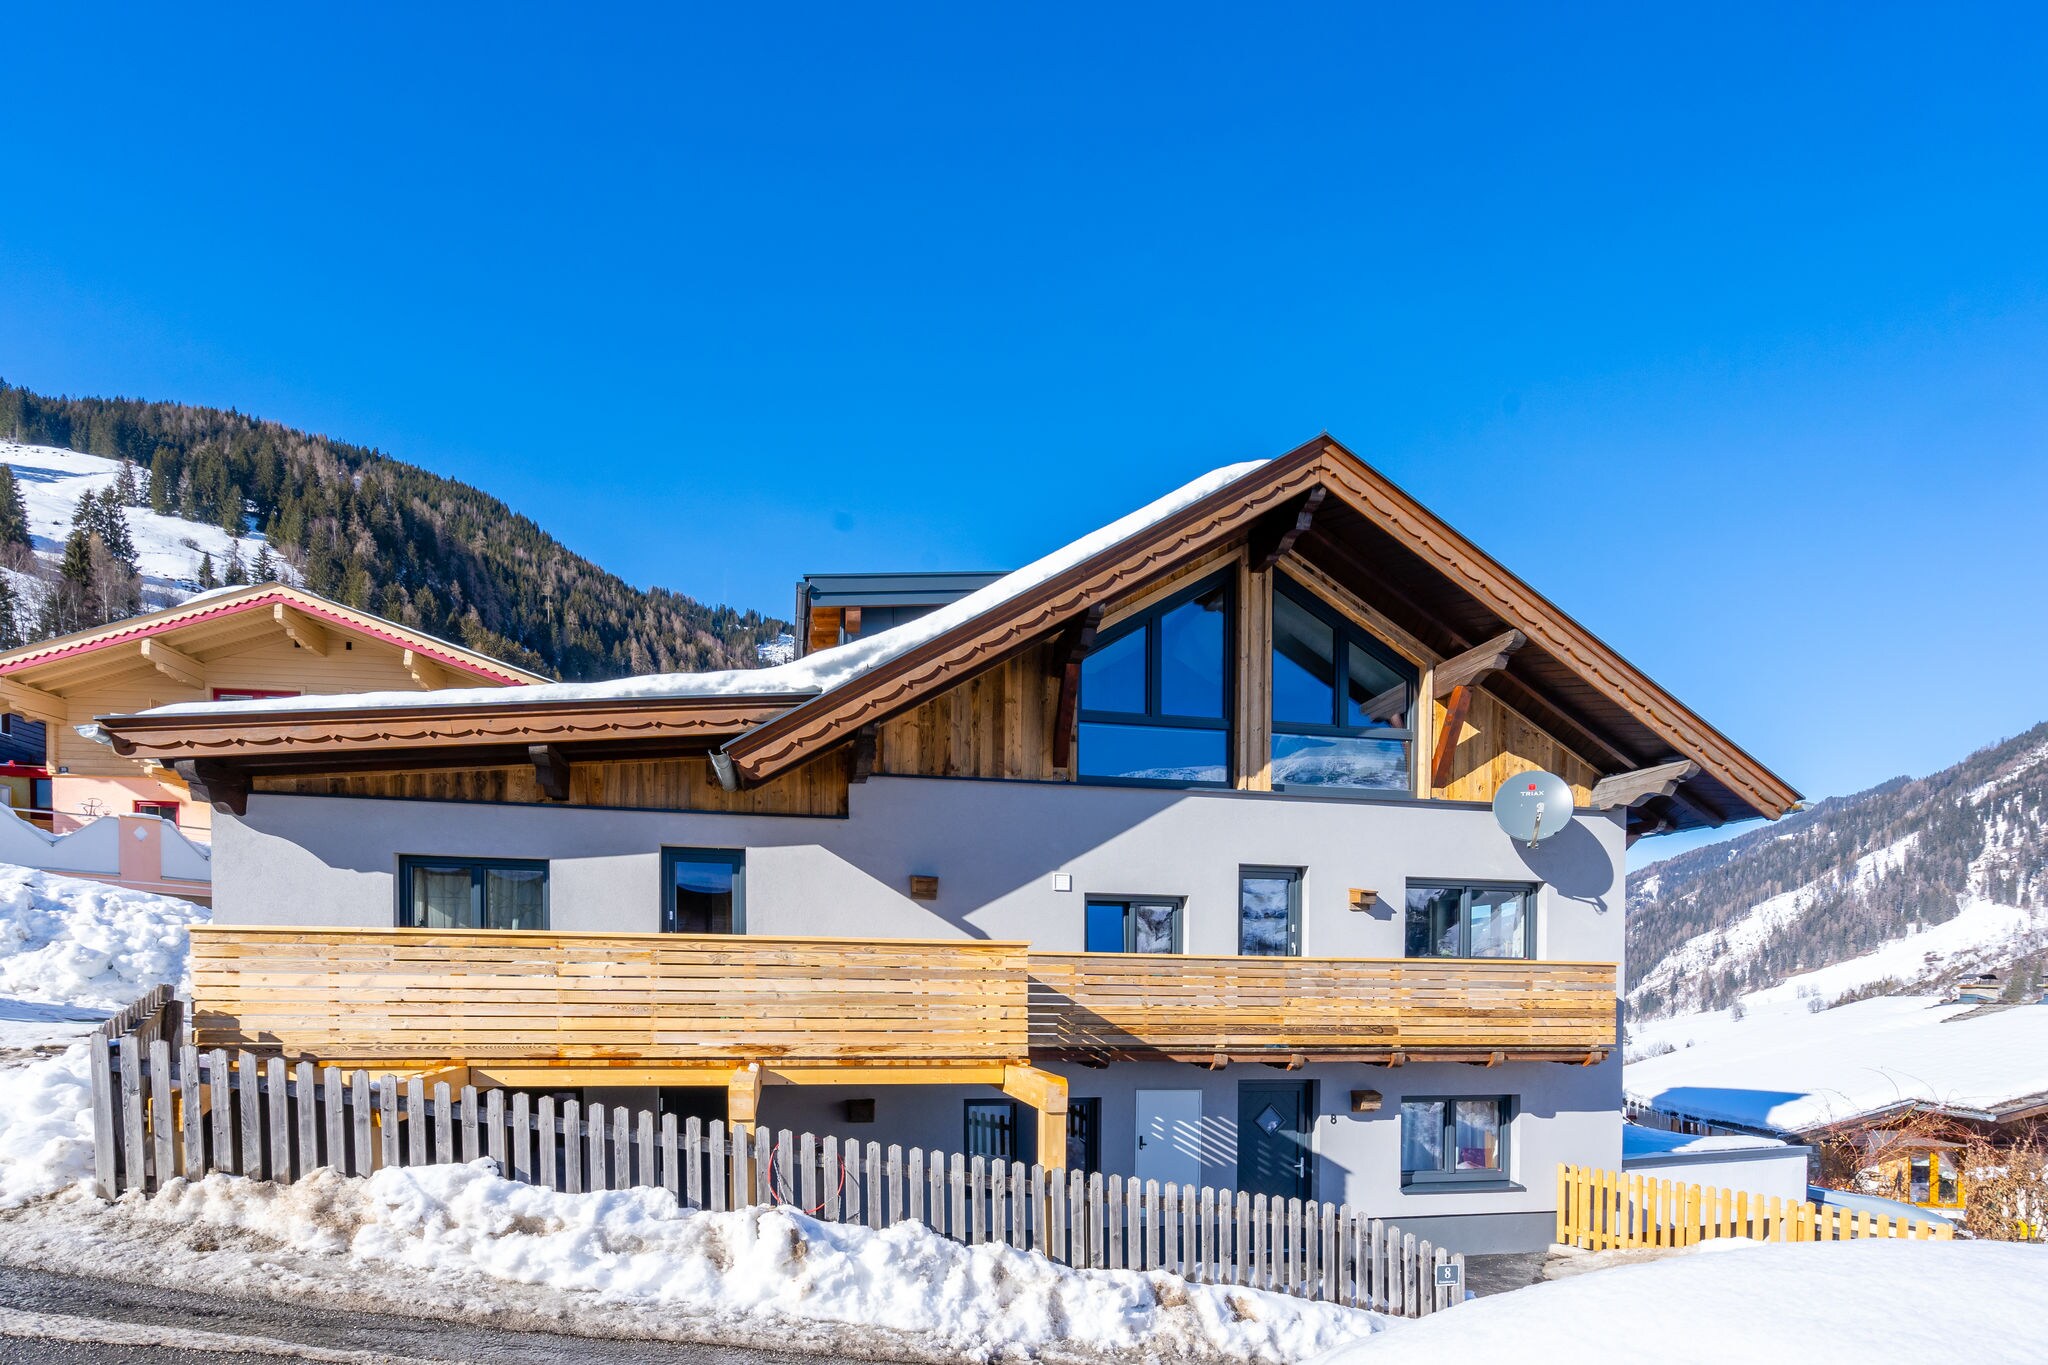 Maison de vacances confortable, située à Rauris, près de la piste de ski